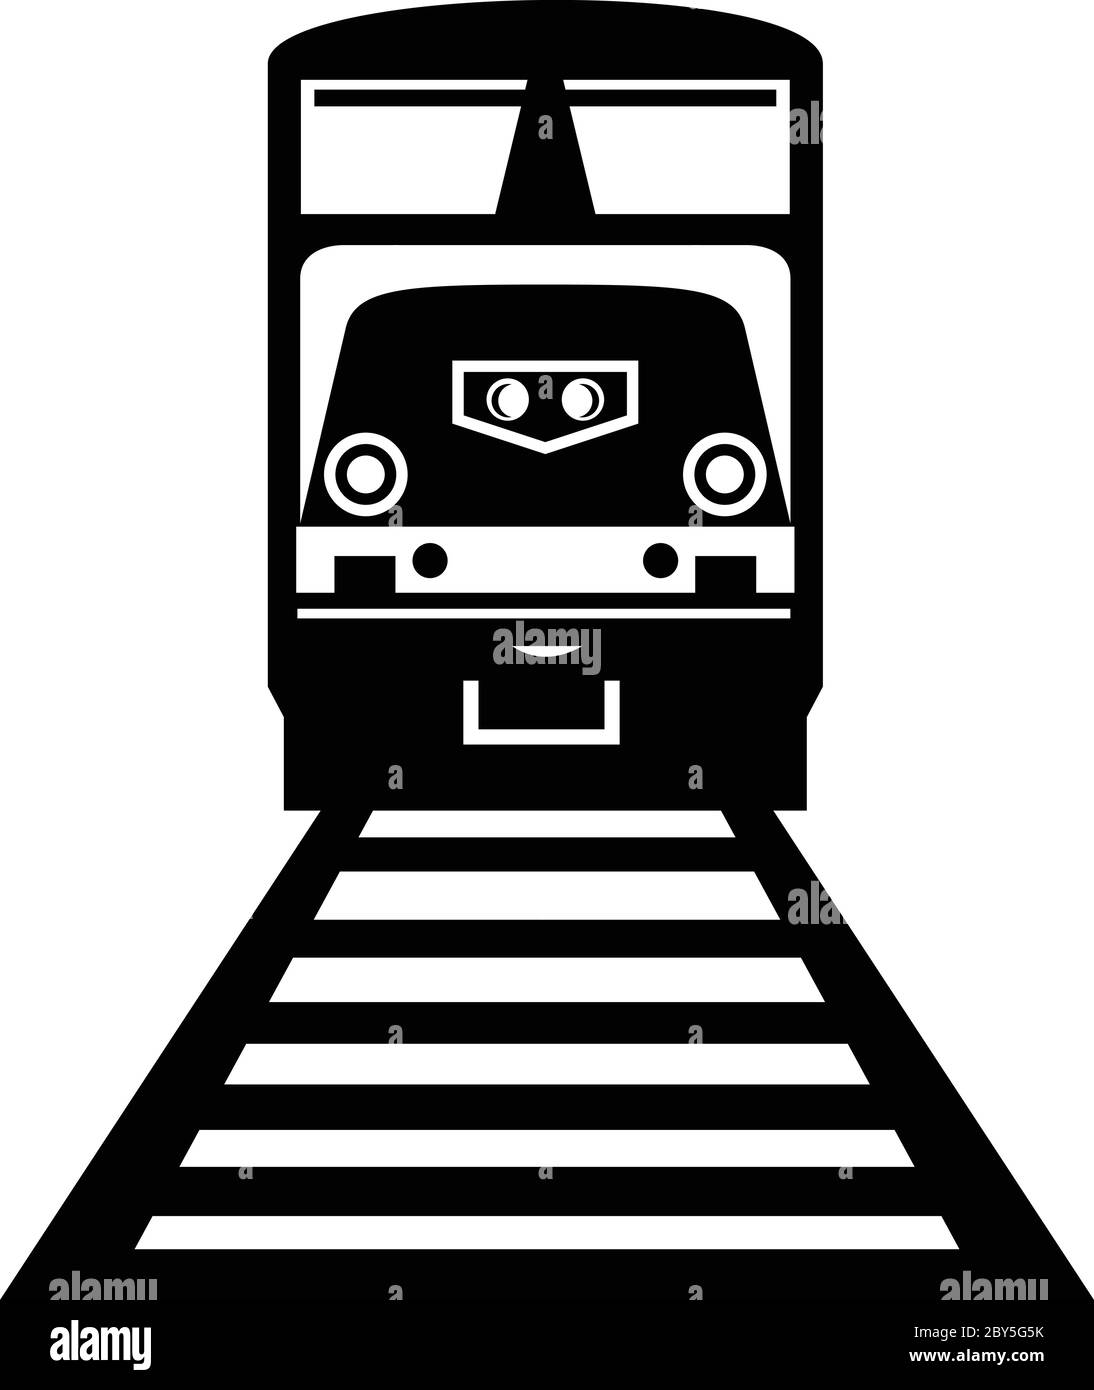 Illustrazione di un treno diesel, una locomotiva ferroviaria in cui il motore primario è un motore diesel, su binari ferroviari visti dalla parte anteriore in nero retrò Illustrazione Vettoriale